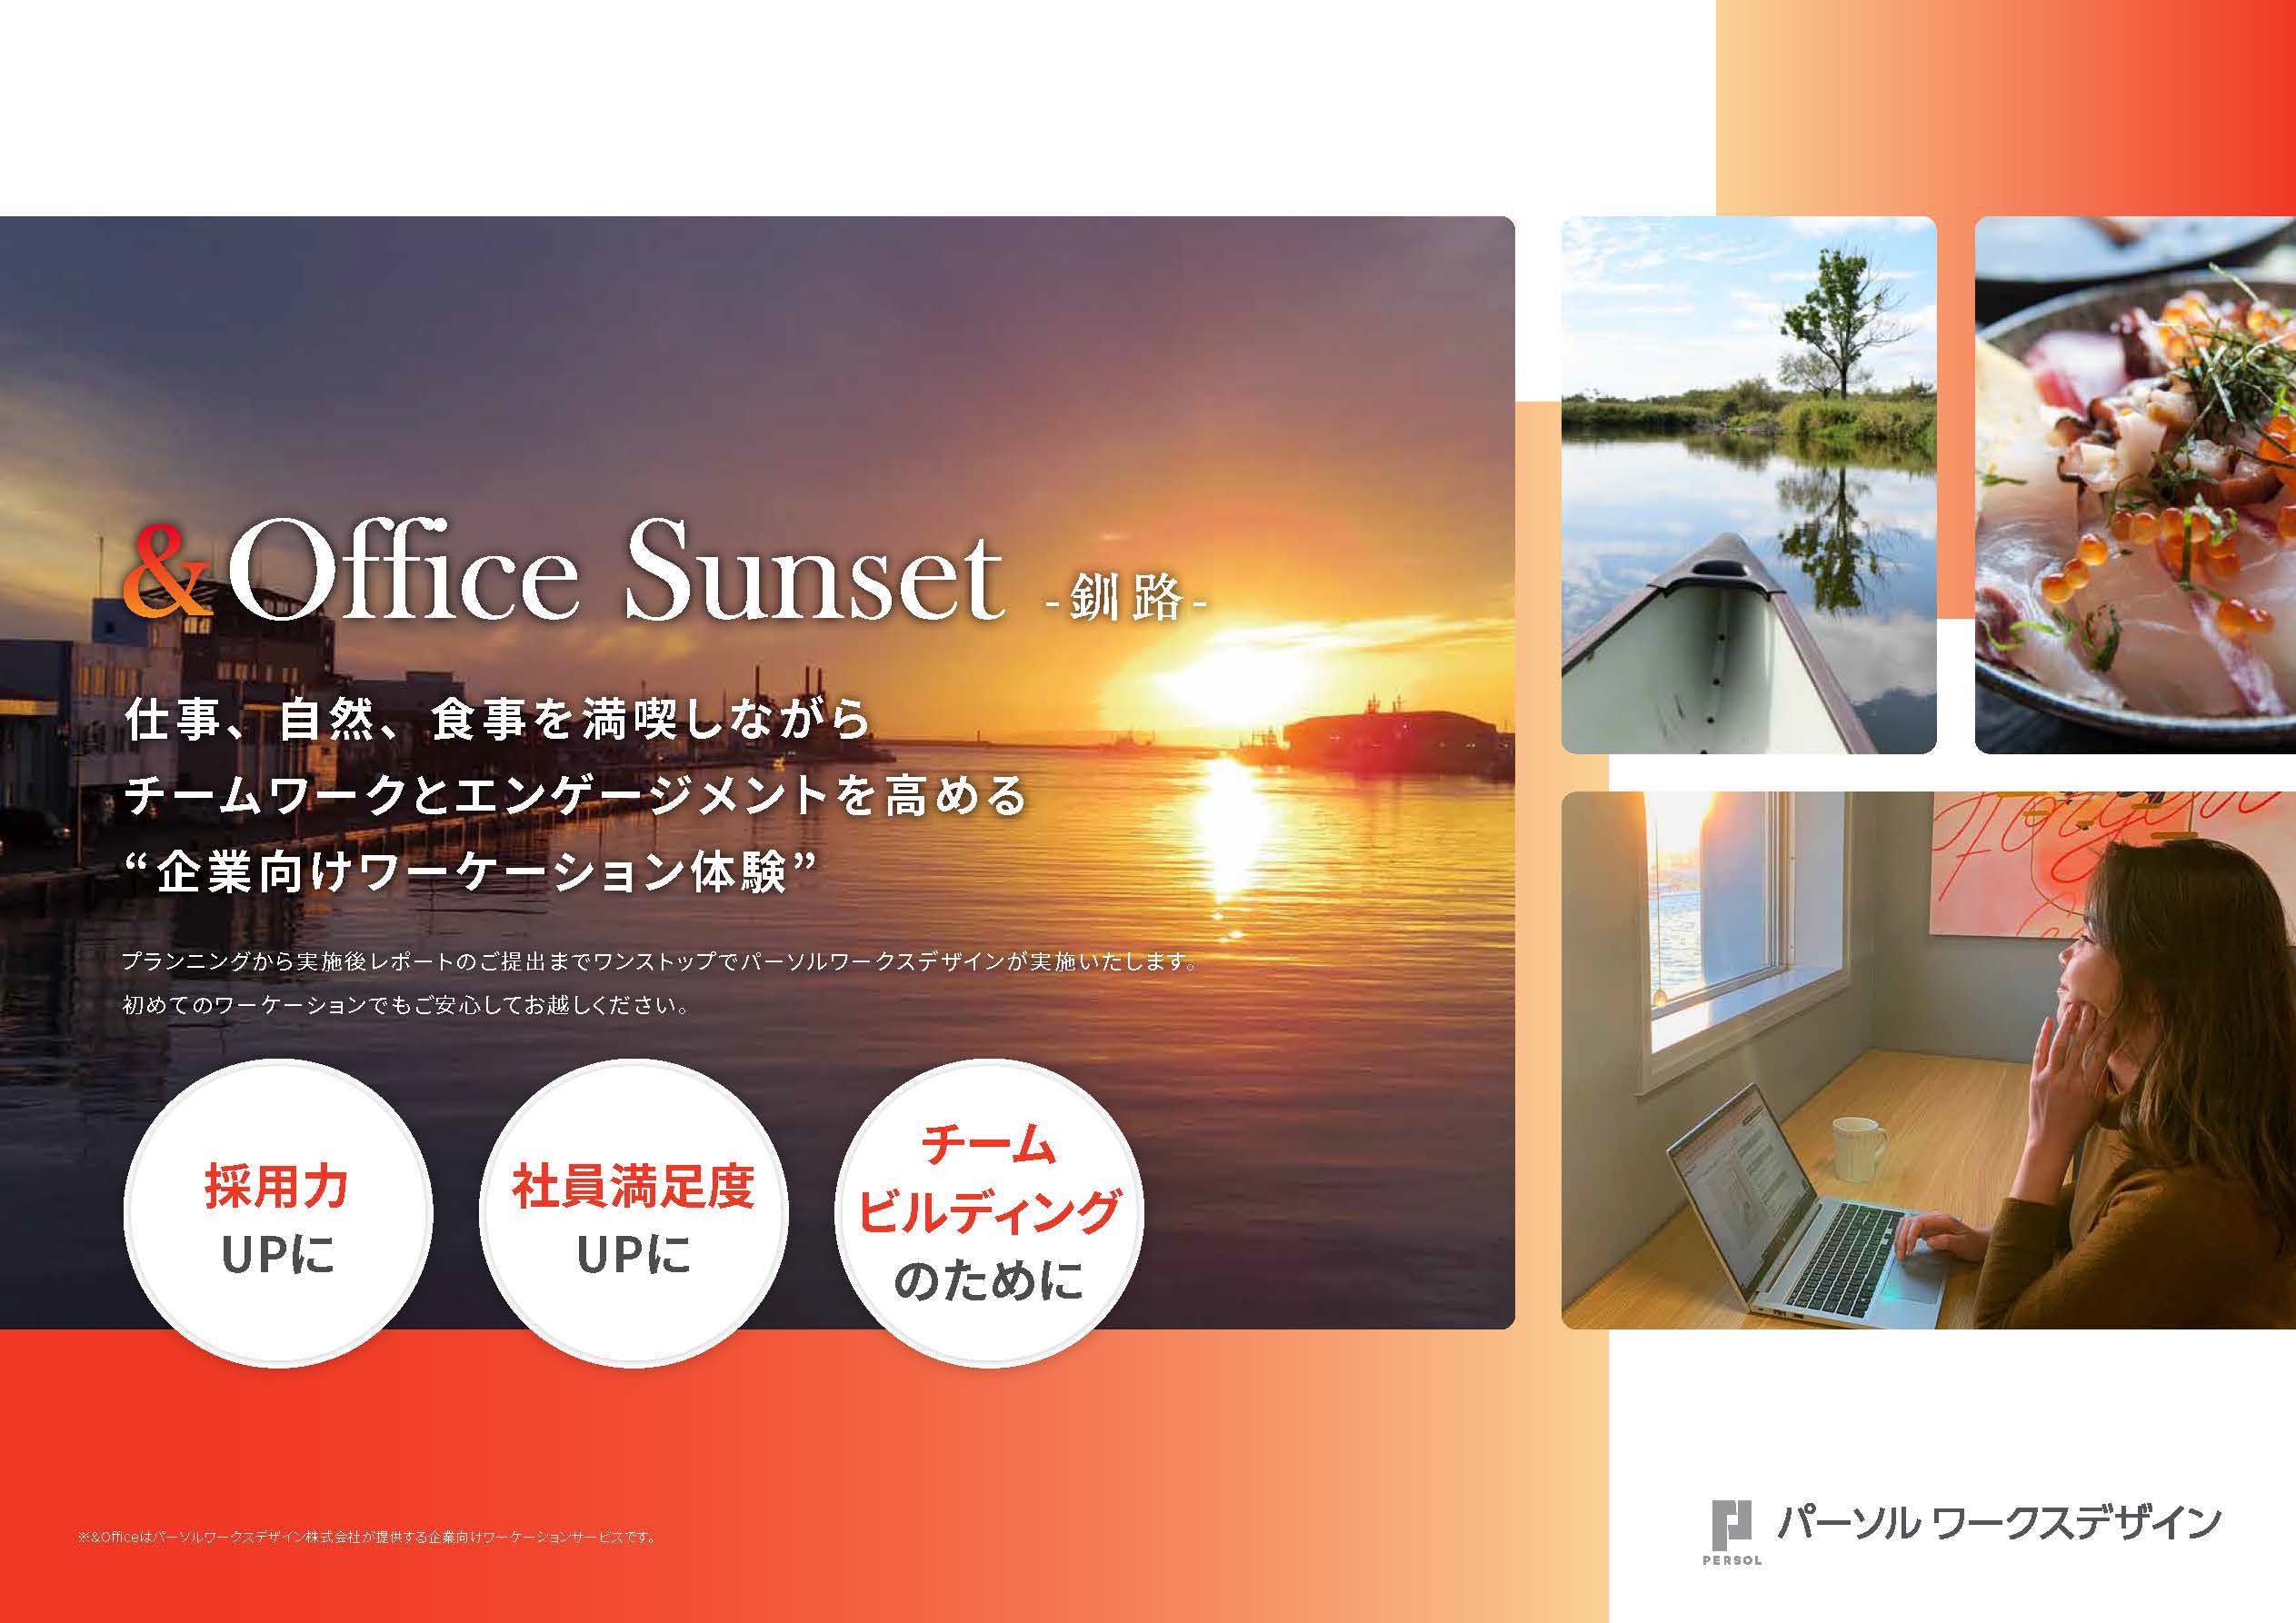 &Office_Sunset_-釧路-_ページ_01